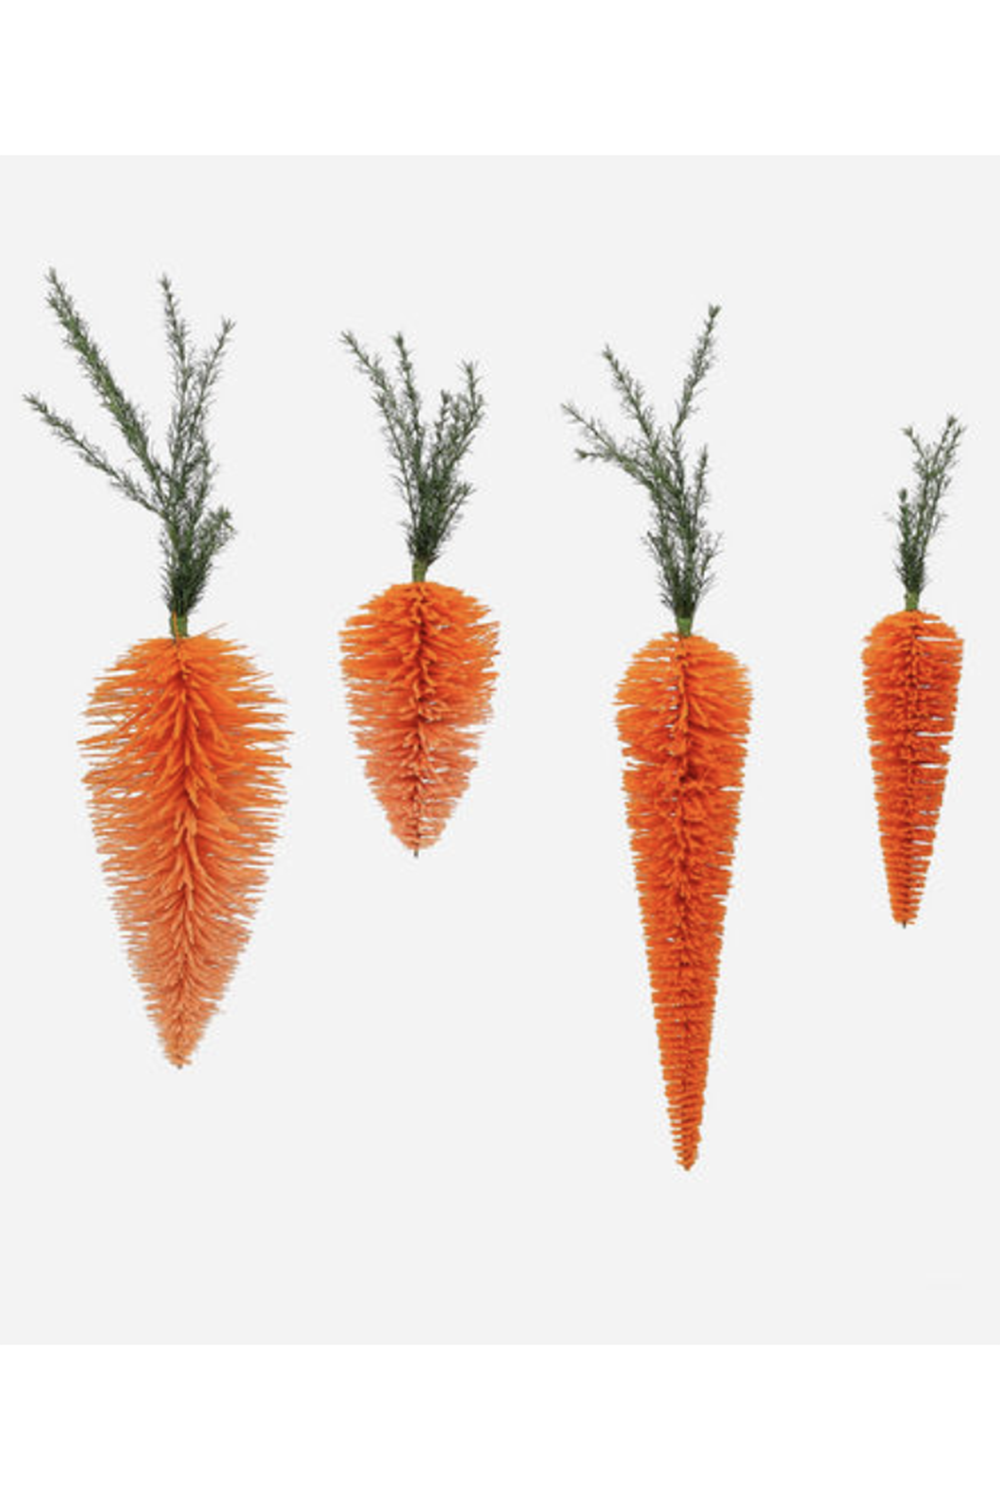 Hanging Orange Carrot